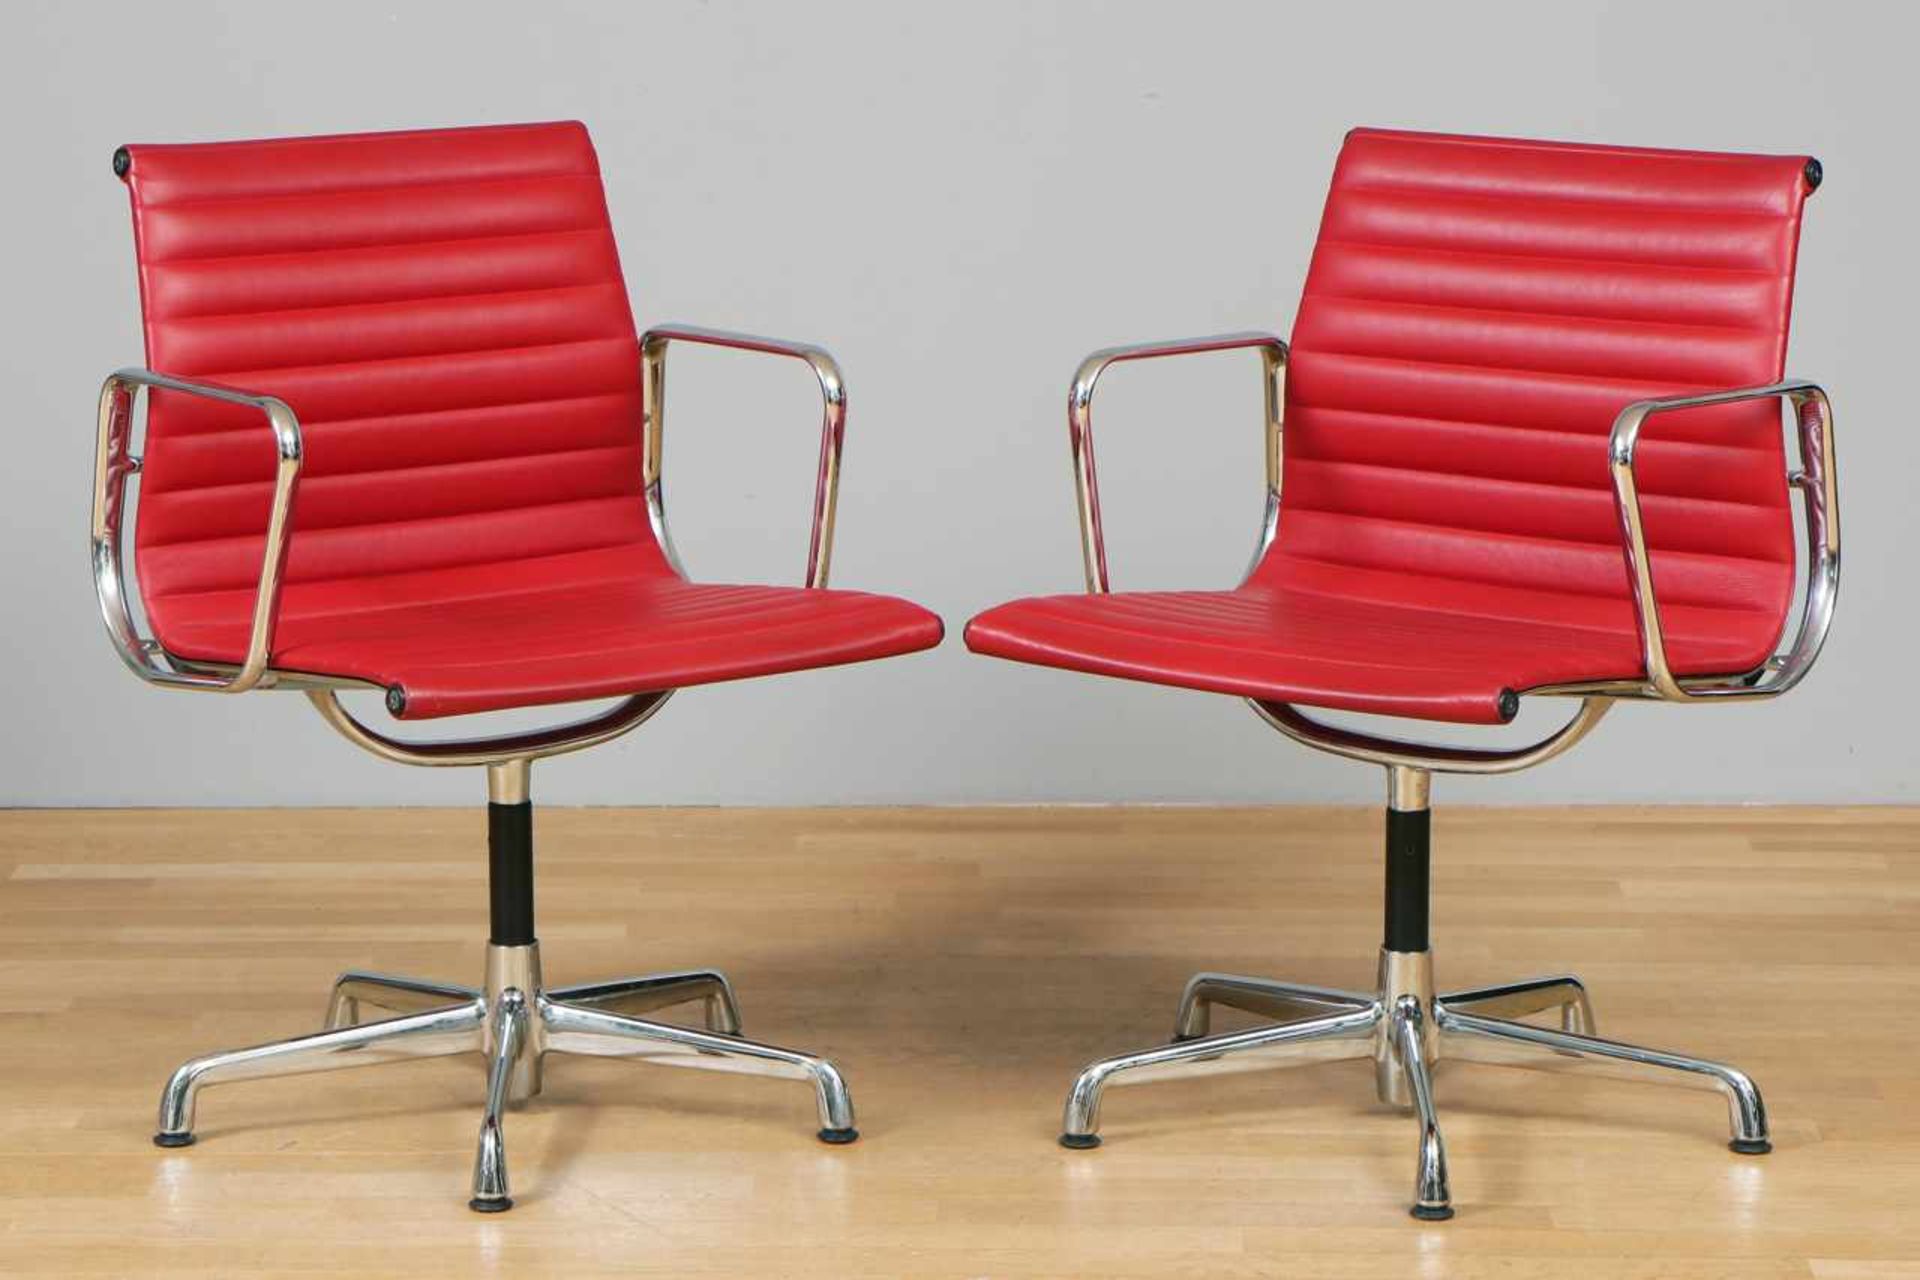 6 Armlehner (¨Conference Chairs¨) unbekannter Hersteller, um 1980, rotes Kunstleder/Vinyl-Bezug, 5- - Bild 2 aus 2